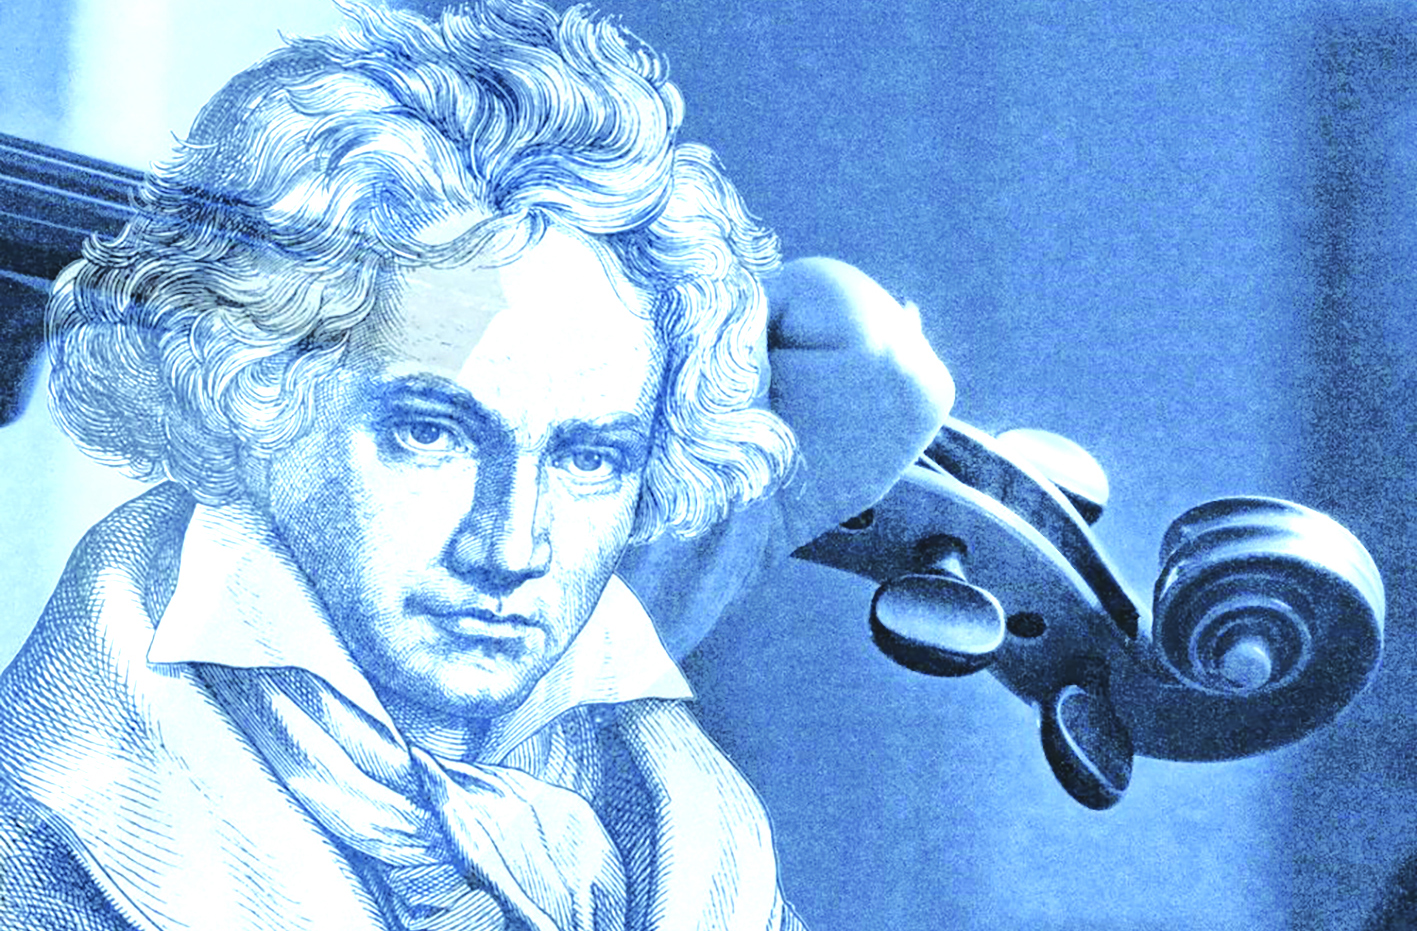 Hoàn thiện bản giao hưởng của Beethoven dang dở